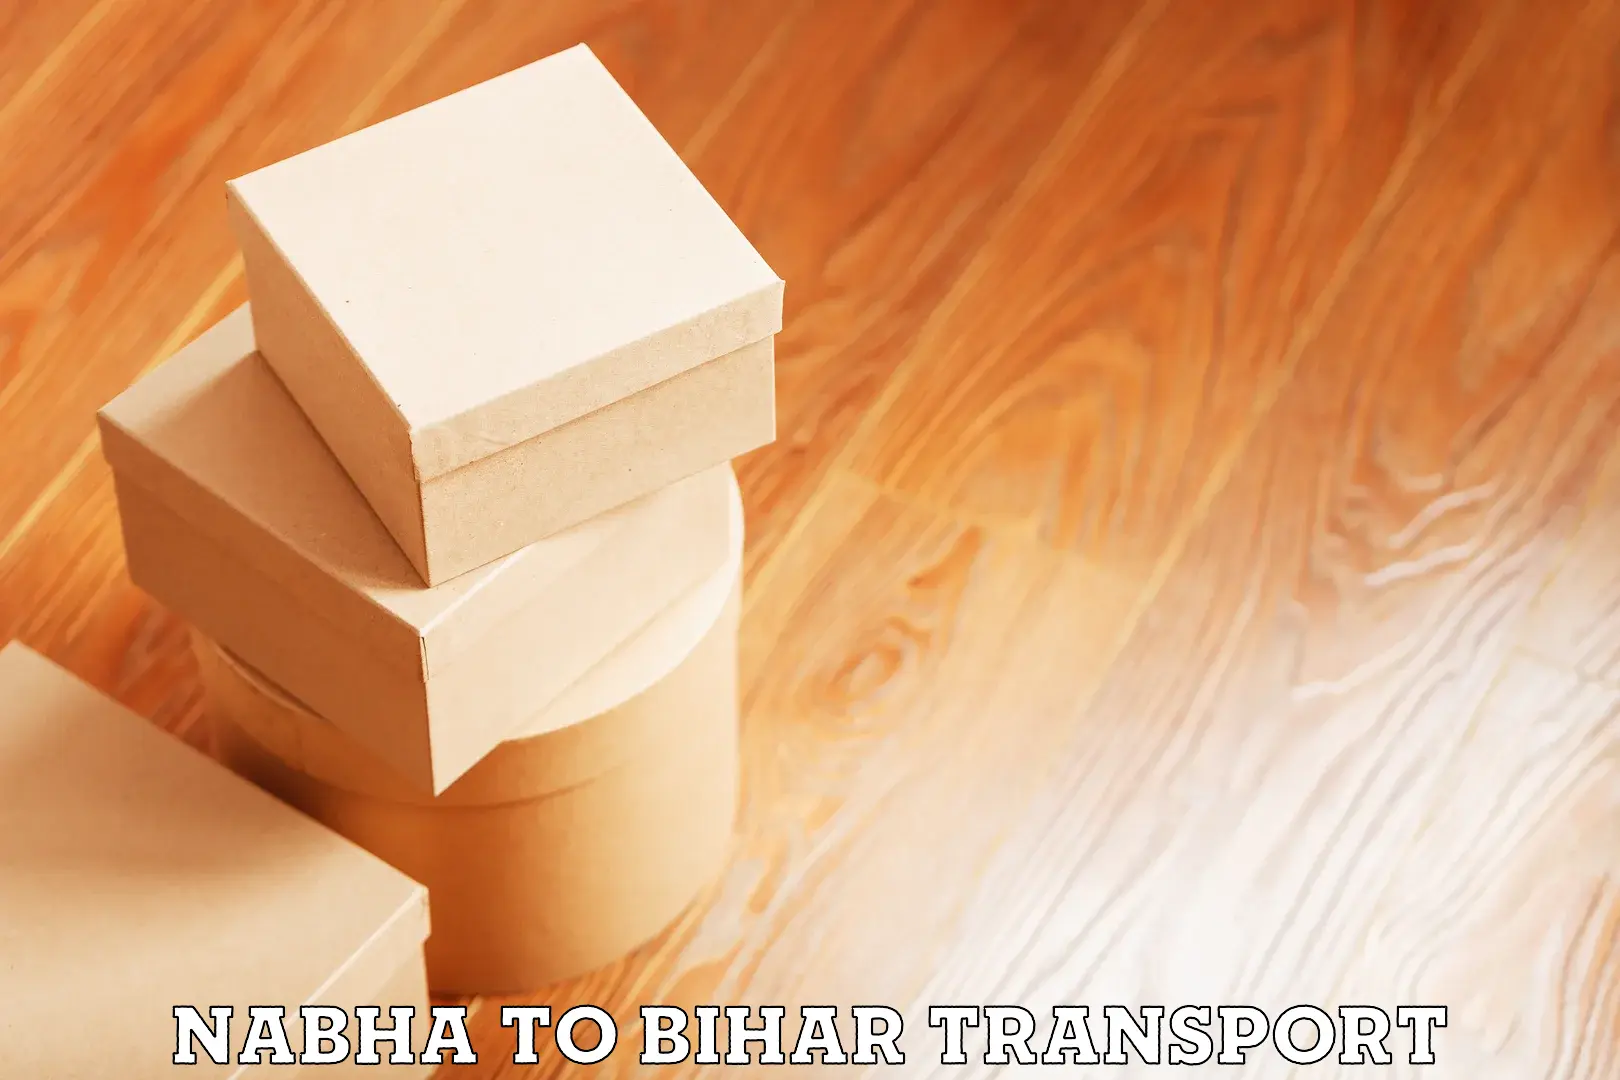 Nearby transport service Nabha to IIIT Bhagalpur